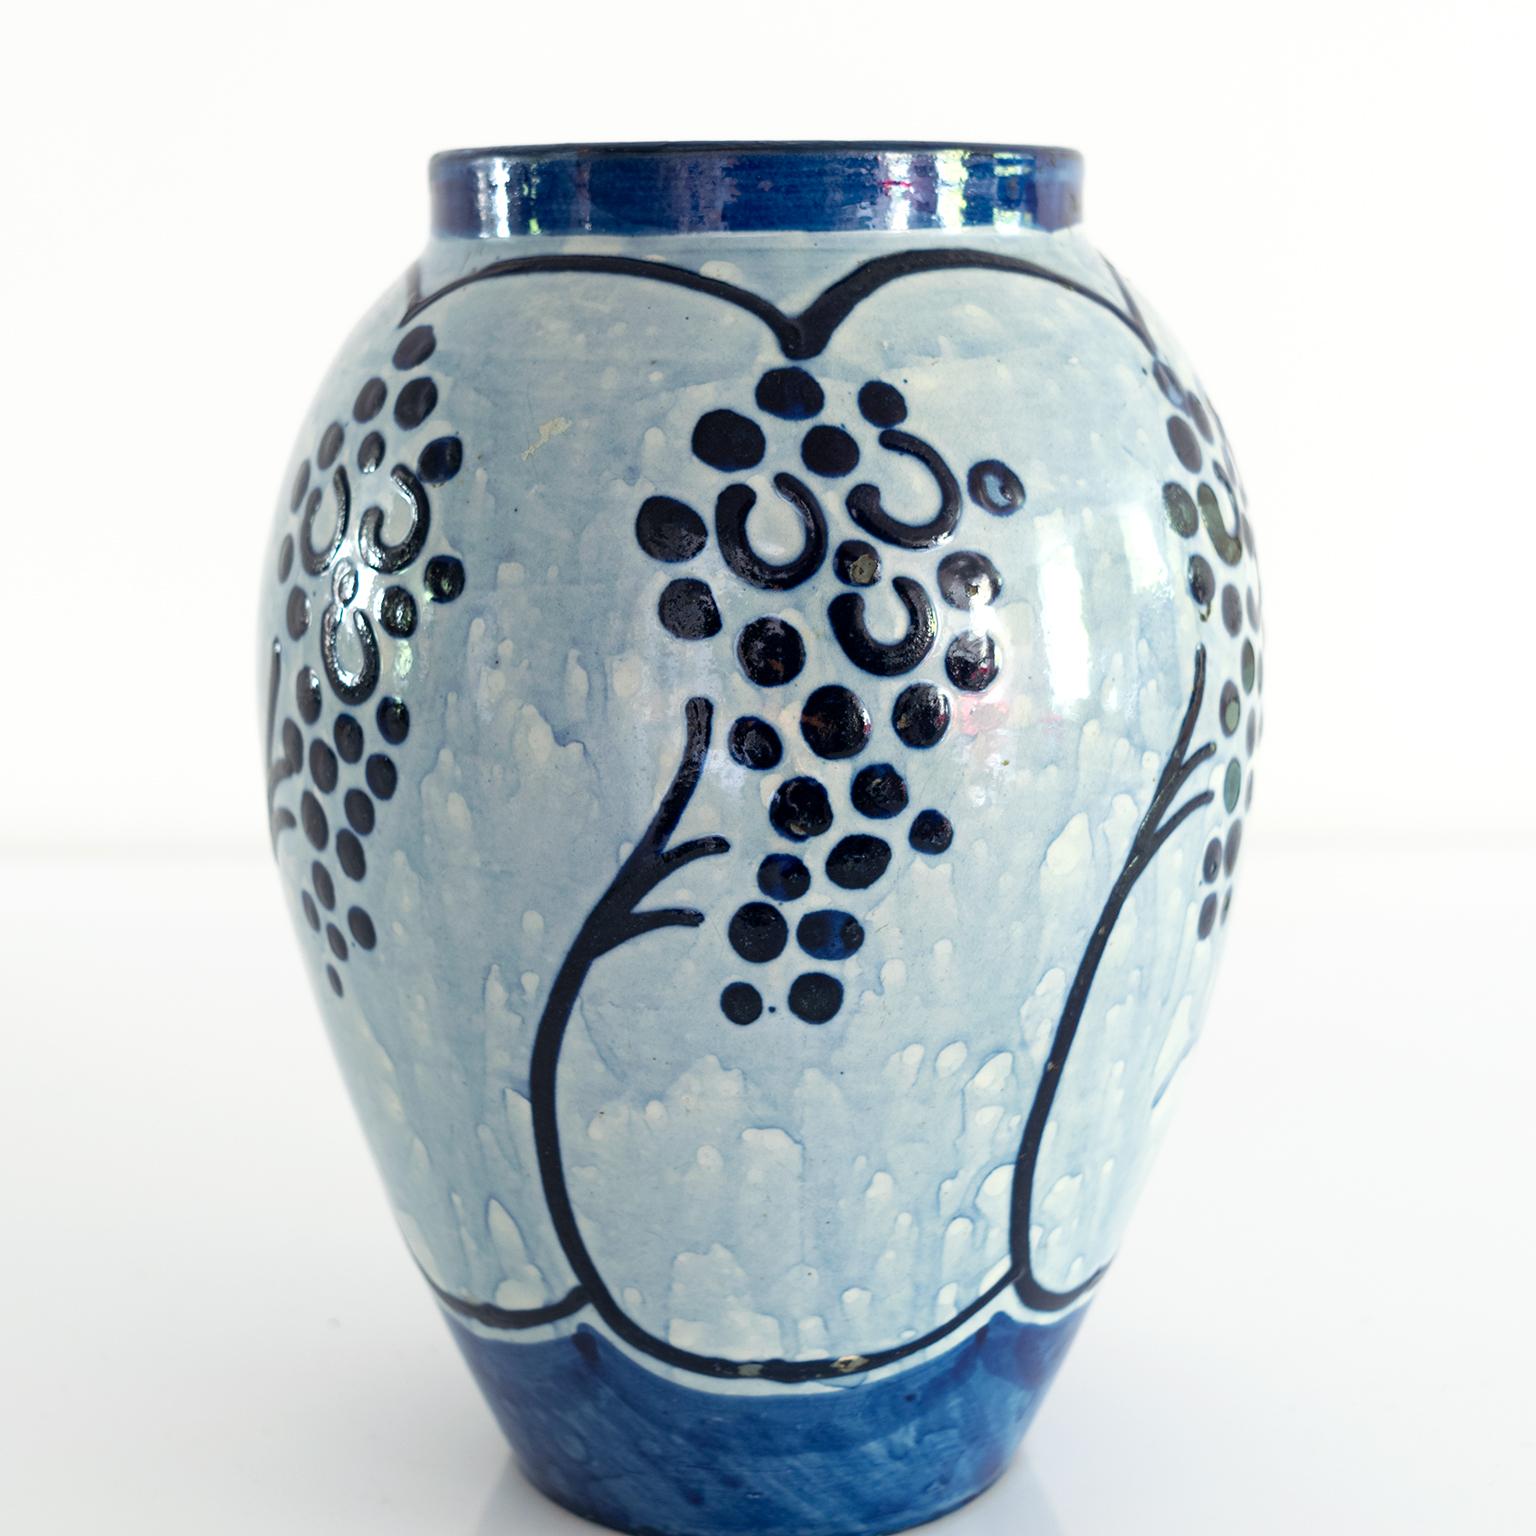 Glazed Scandinavian Modern Blue Ceramic Vase Made by Upsala Ekeby, Sweden 1940 For Sale